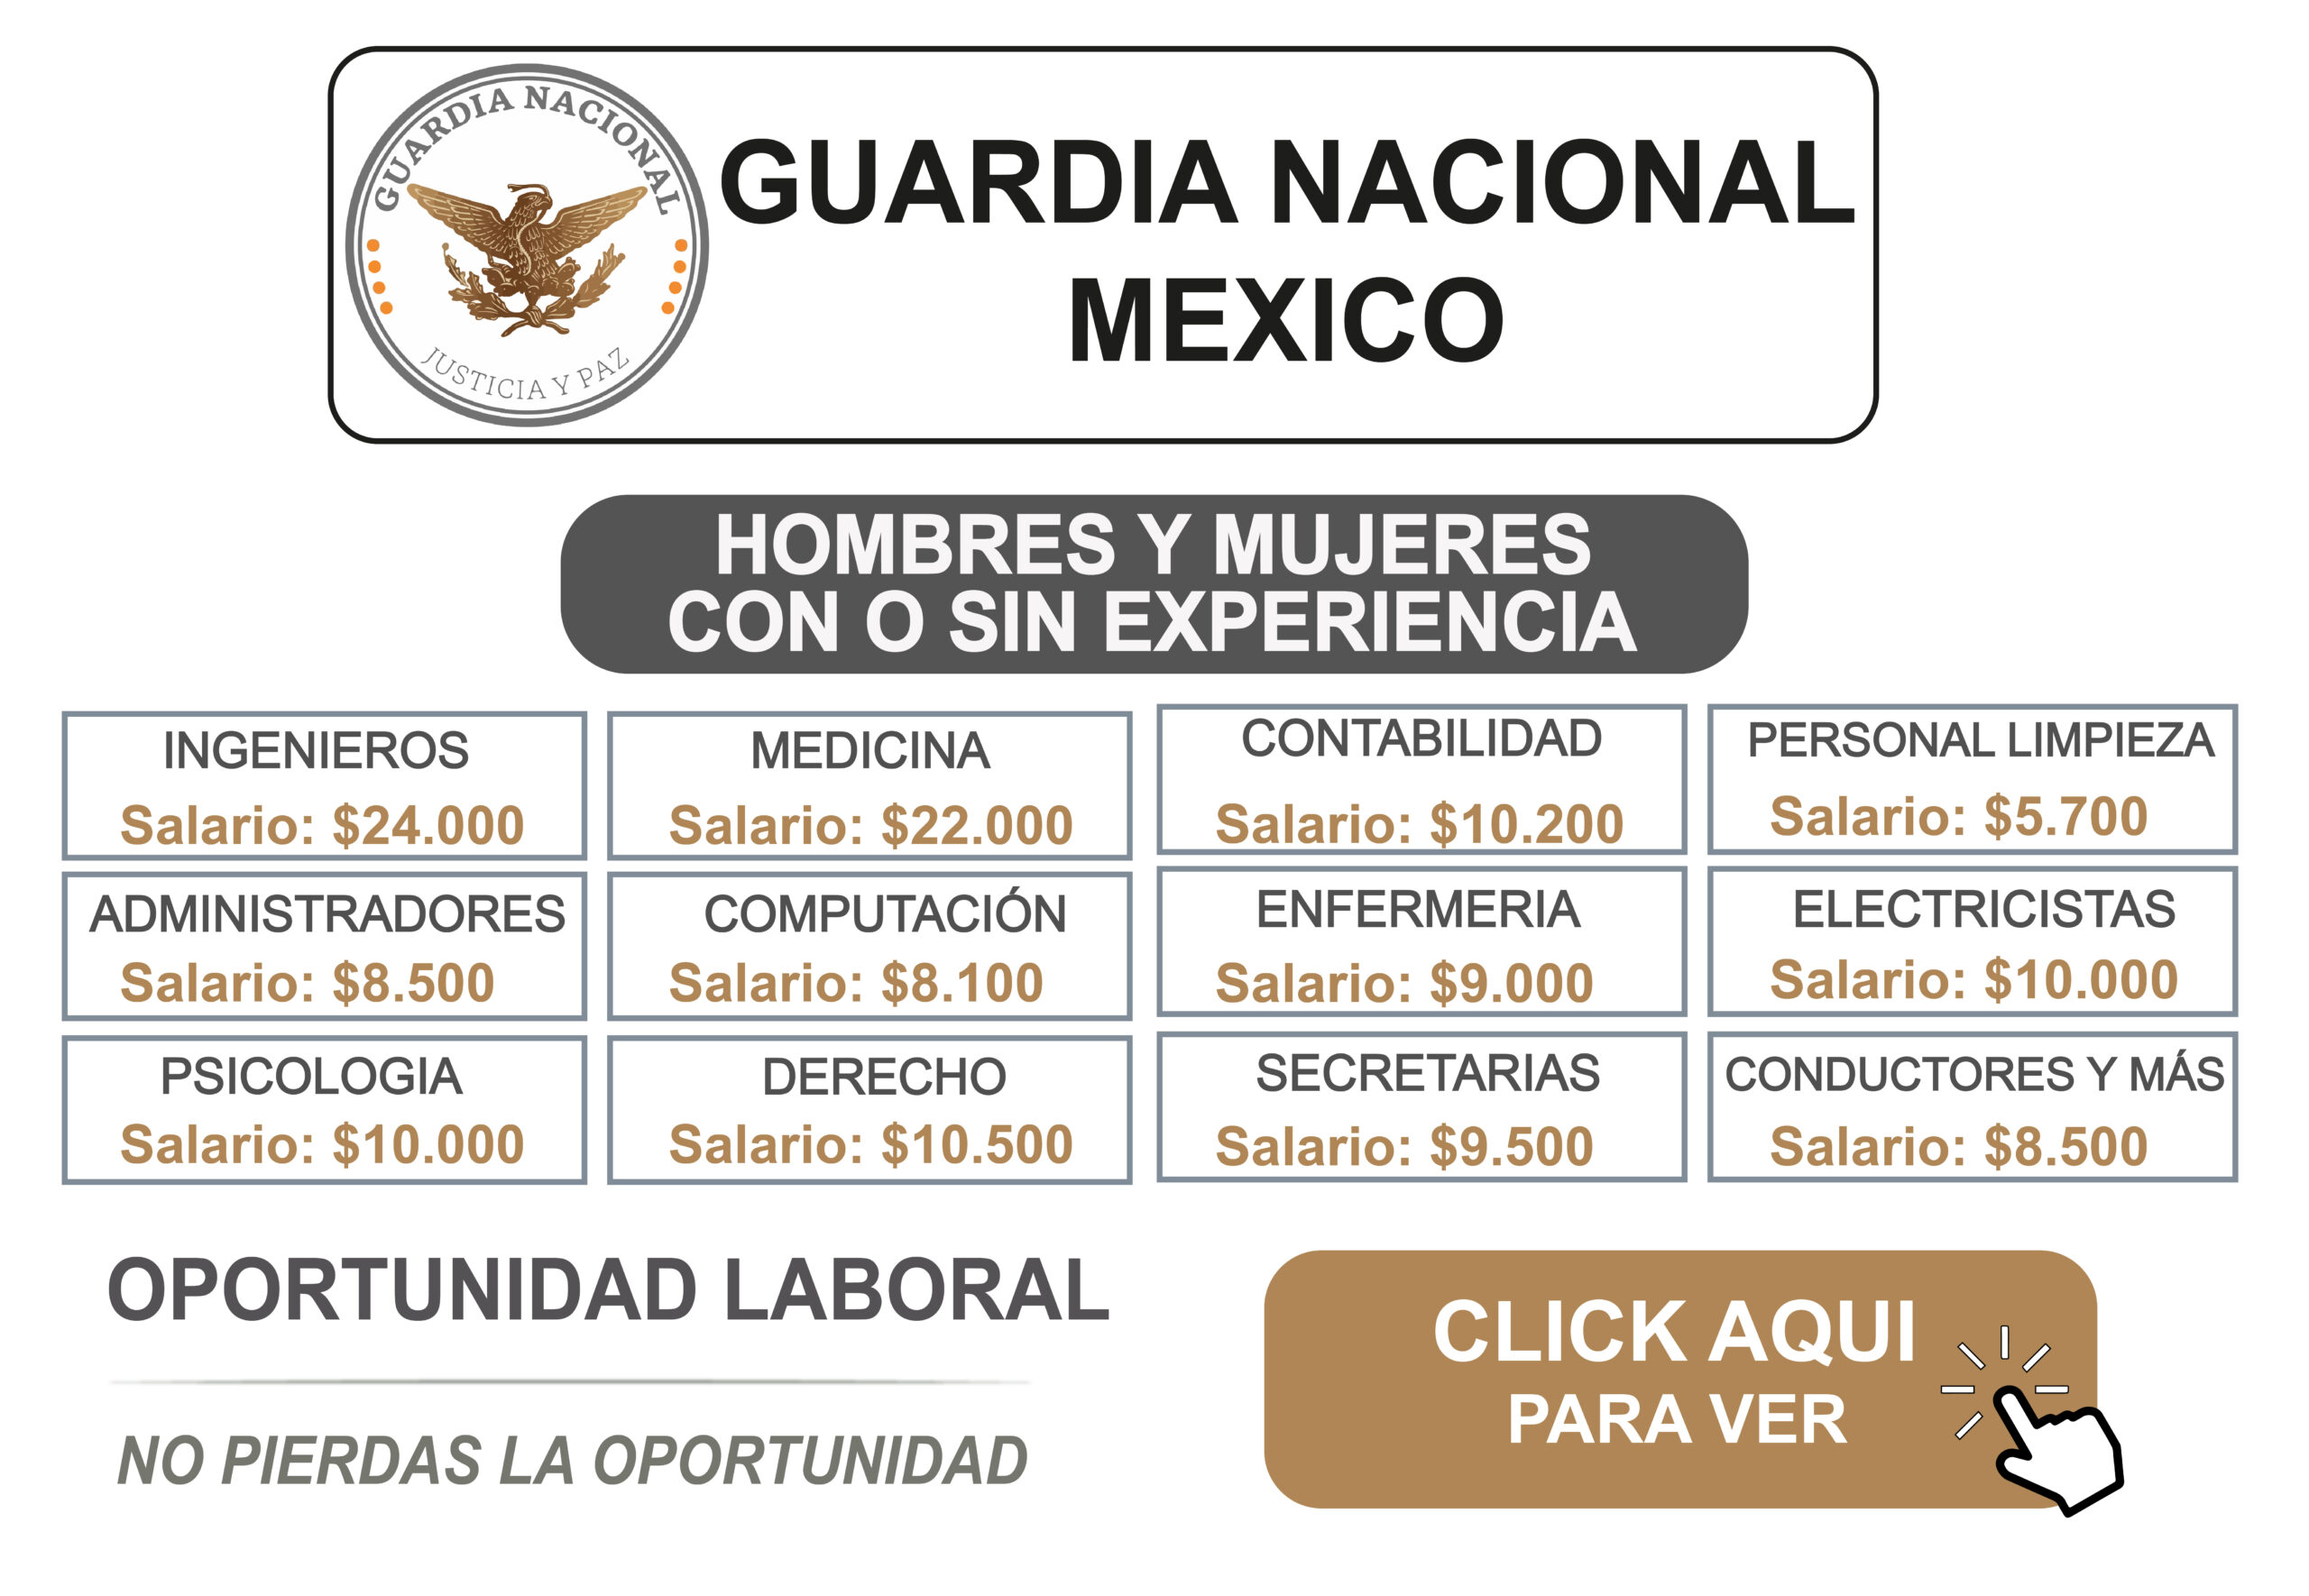 GUARDIA NACIONAL DE MEXICO BUSCA PERSONAL PARA TRABAJAR